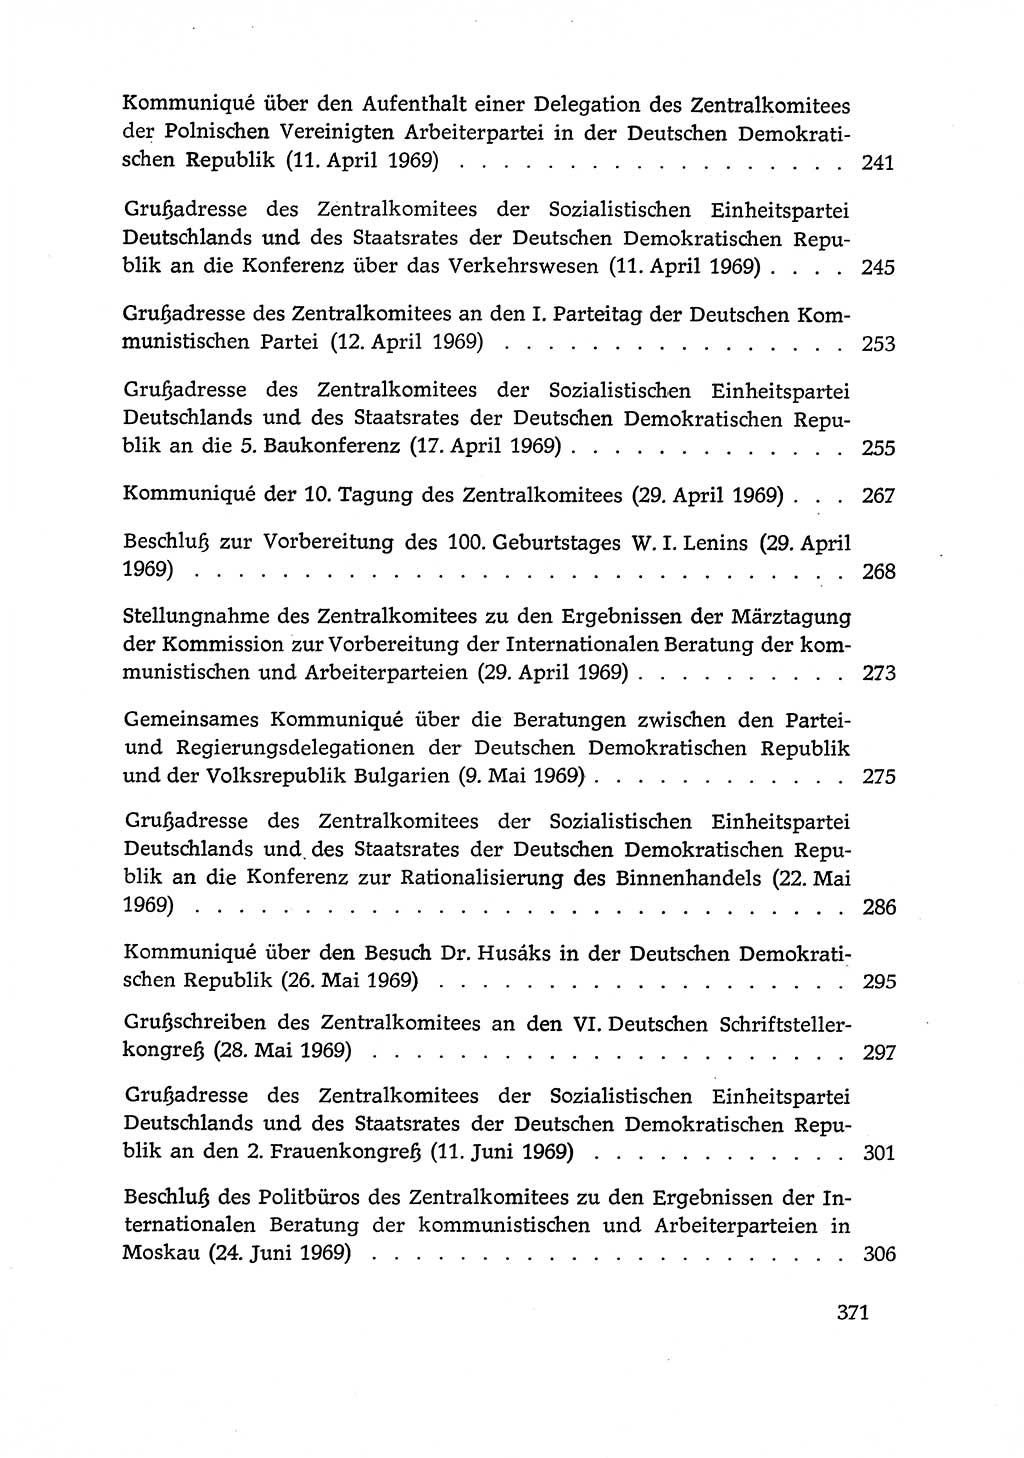 Dokumente der Sozialistischen Einheitspartei Deutschlands (SED) [Deutsche Demokratische Republik (DDR)] 1968-1969, Seite 371 (Dok. SED DDR 1968-1969, S. 371)